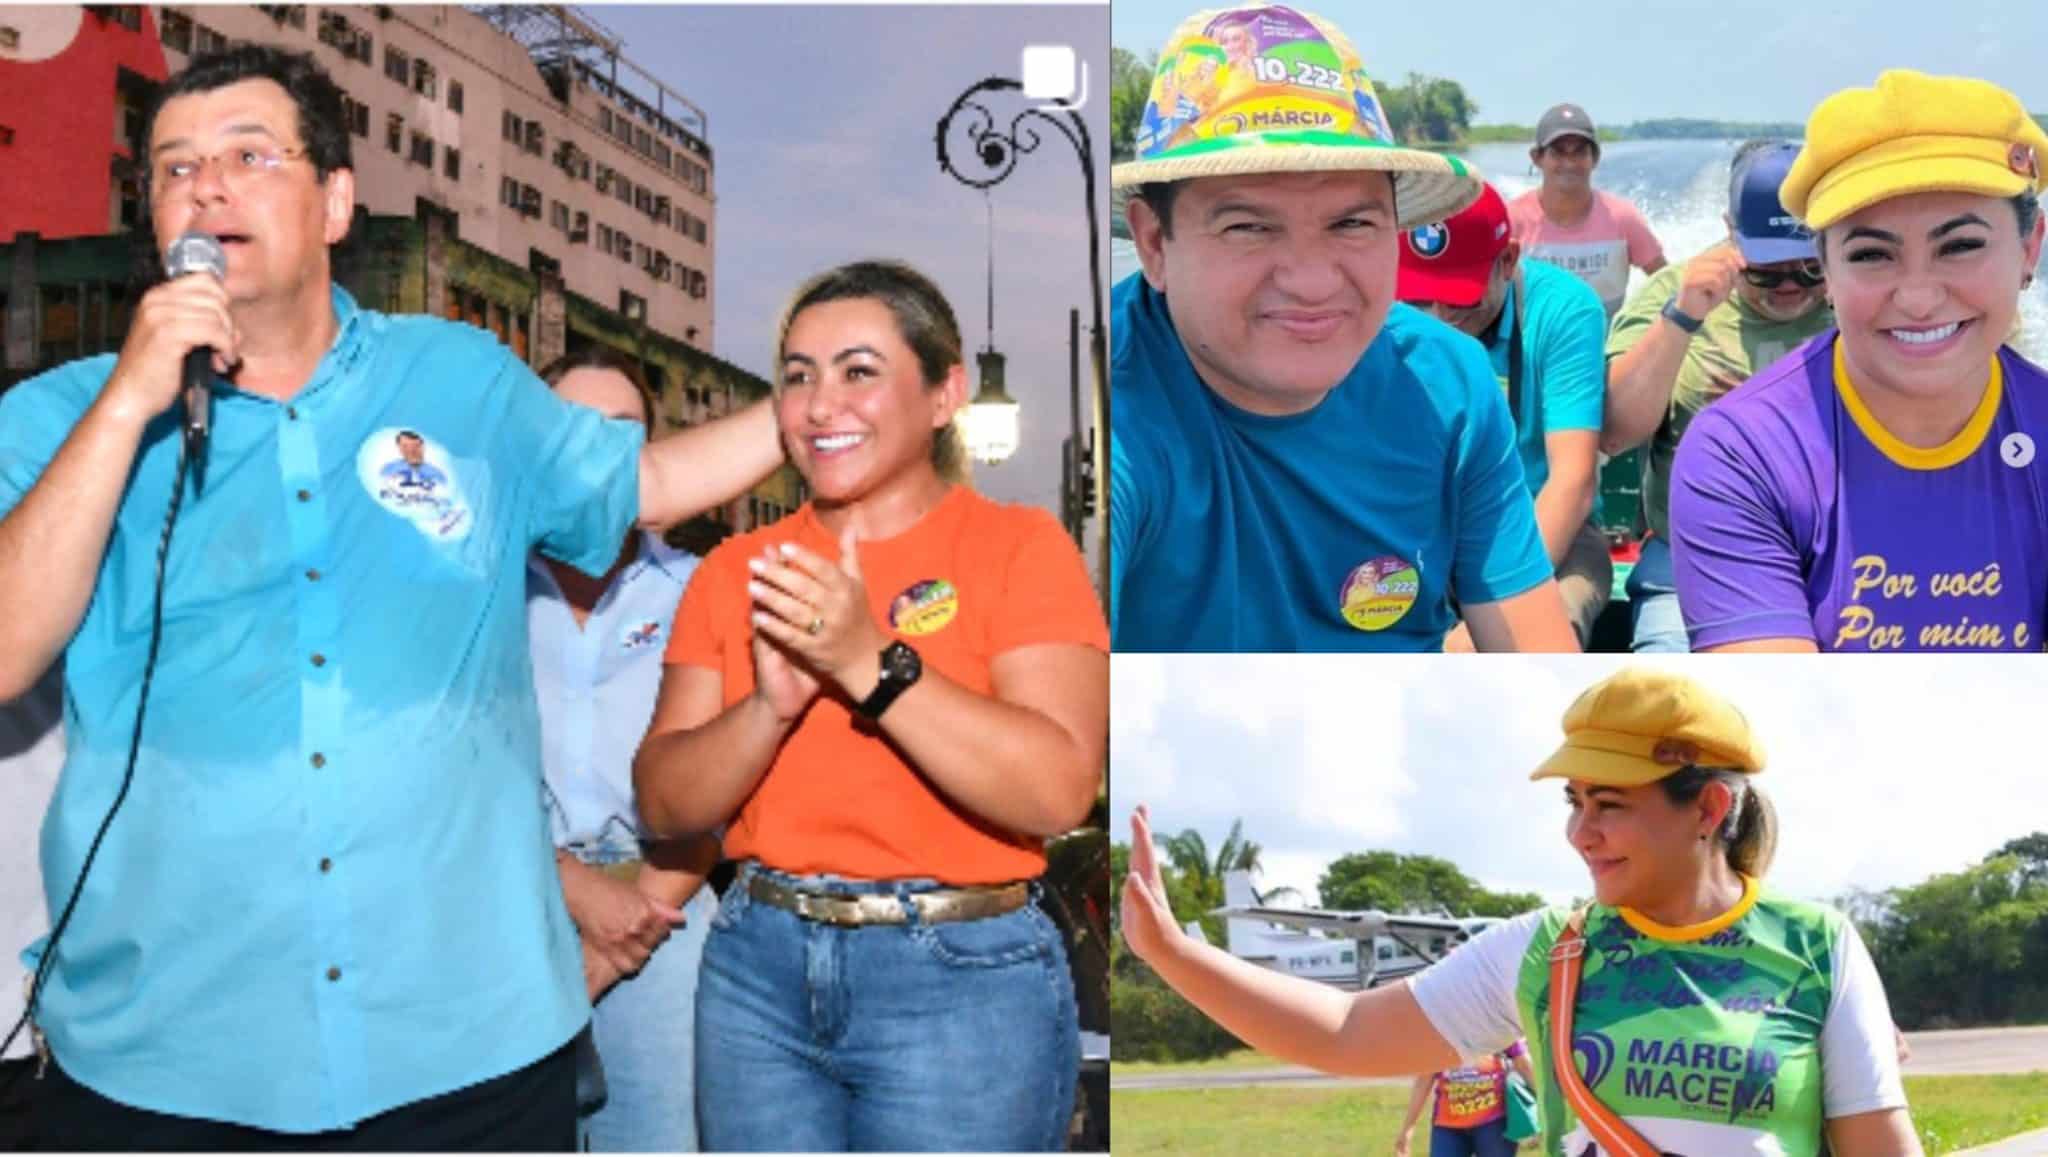 PF apreende R$ 61 mil com irmã da candidata Marcia Macena, mulher do prefeito do Careiro Castanho